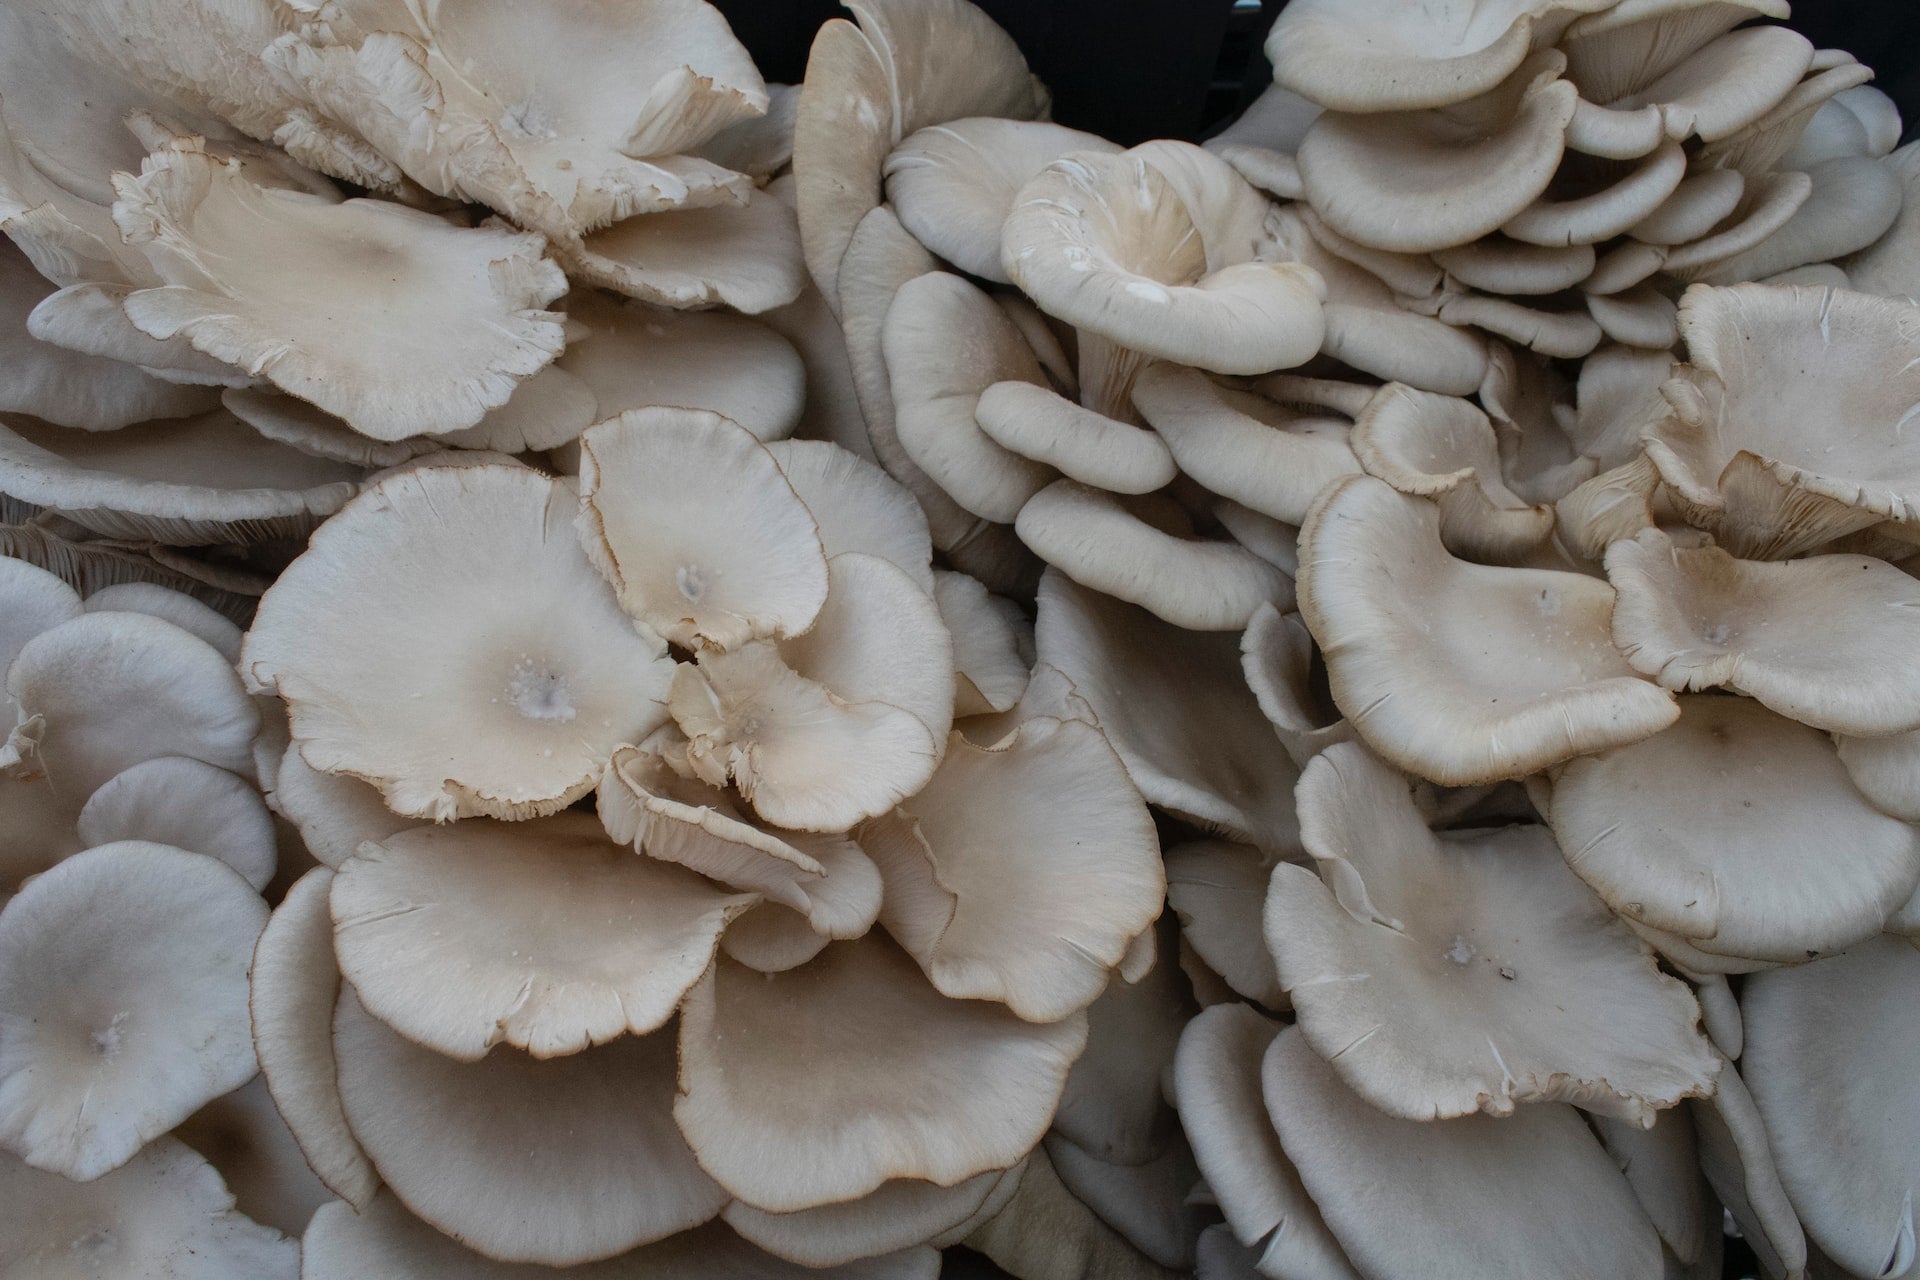 Best Wood Species for Growing Mushrooms: Ultimate Guide